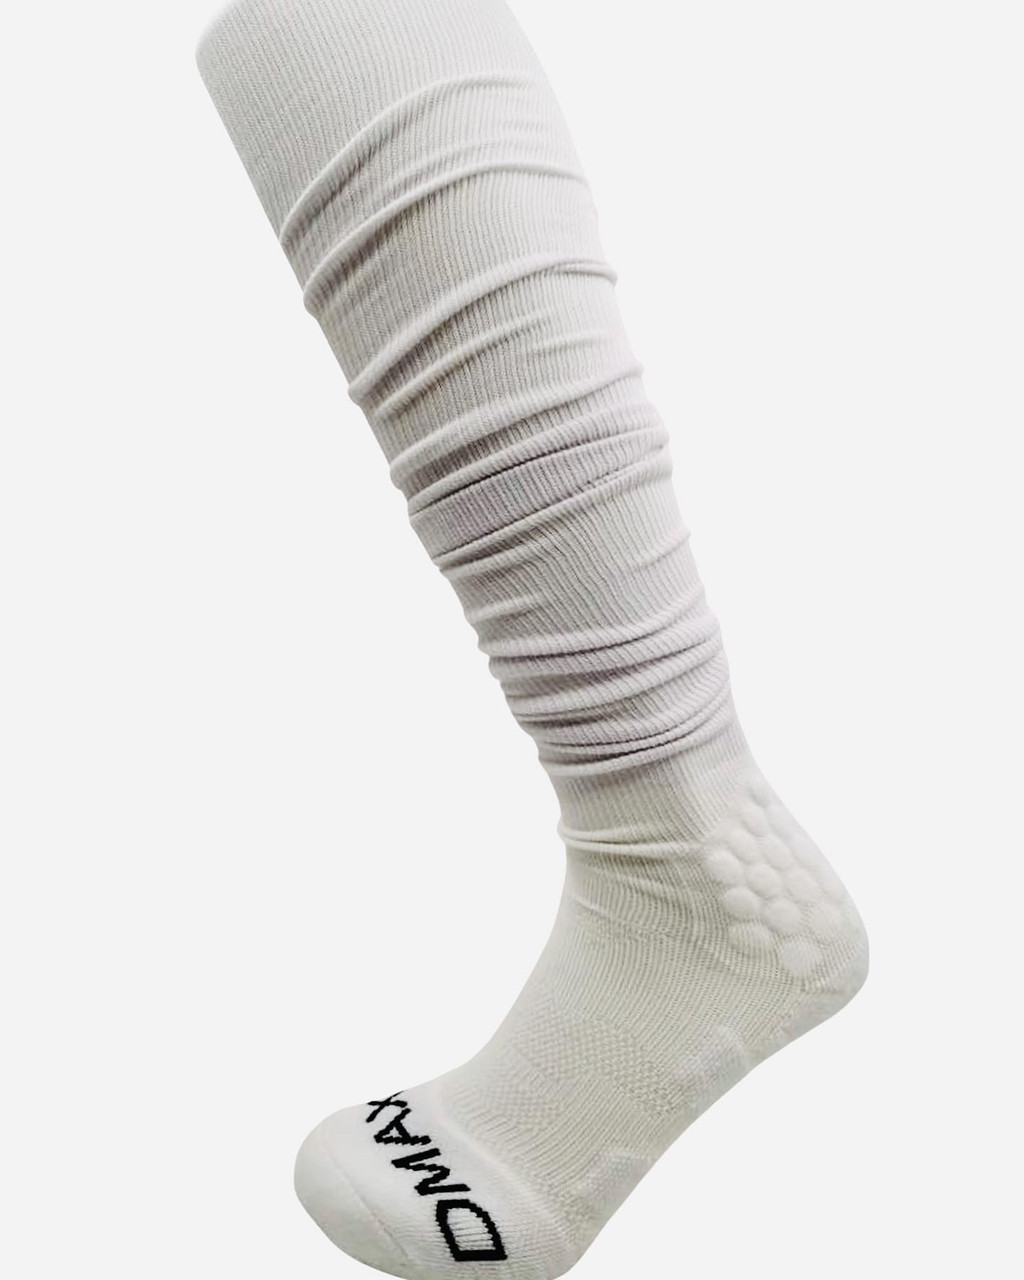 Long Scrunch Socks Football Drip, 4 Socks, 2 Leg Sleeves Included, Stain  Resistant Padded Football Socks, OBJ Socks Football